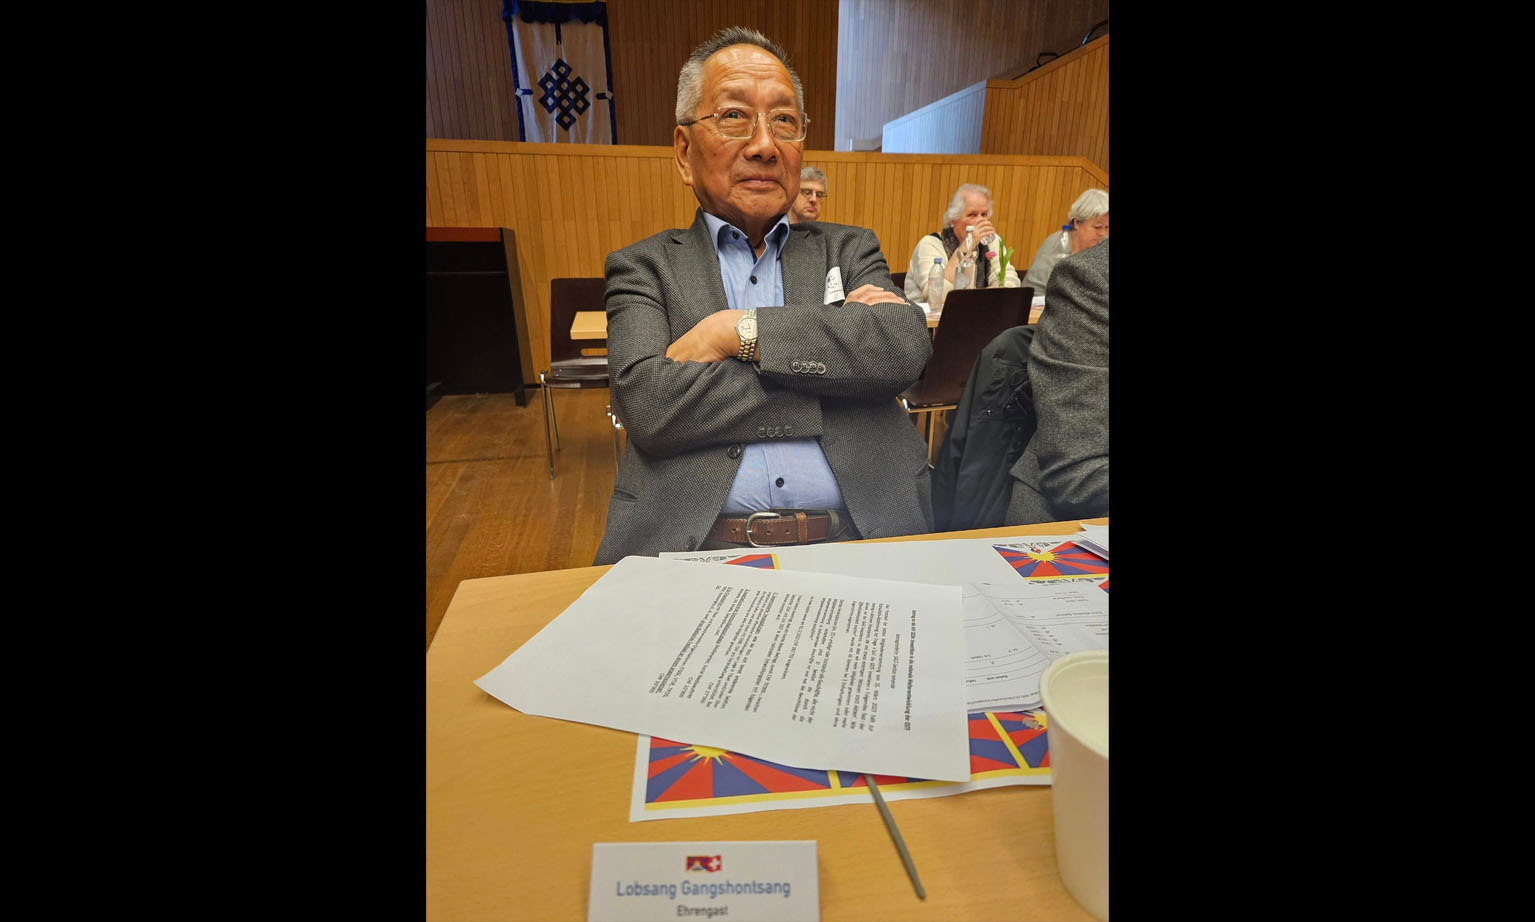 Lobsang Gangshontsang, ehemaliger Präsident der Tibetergemeinschaft, sitzt an einem Tisch. 